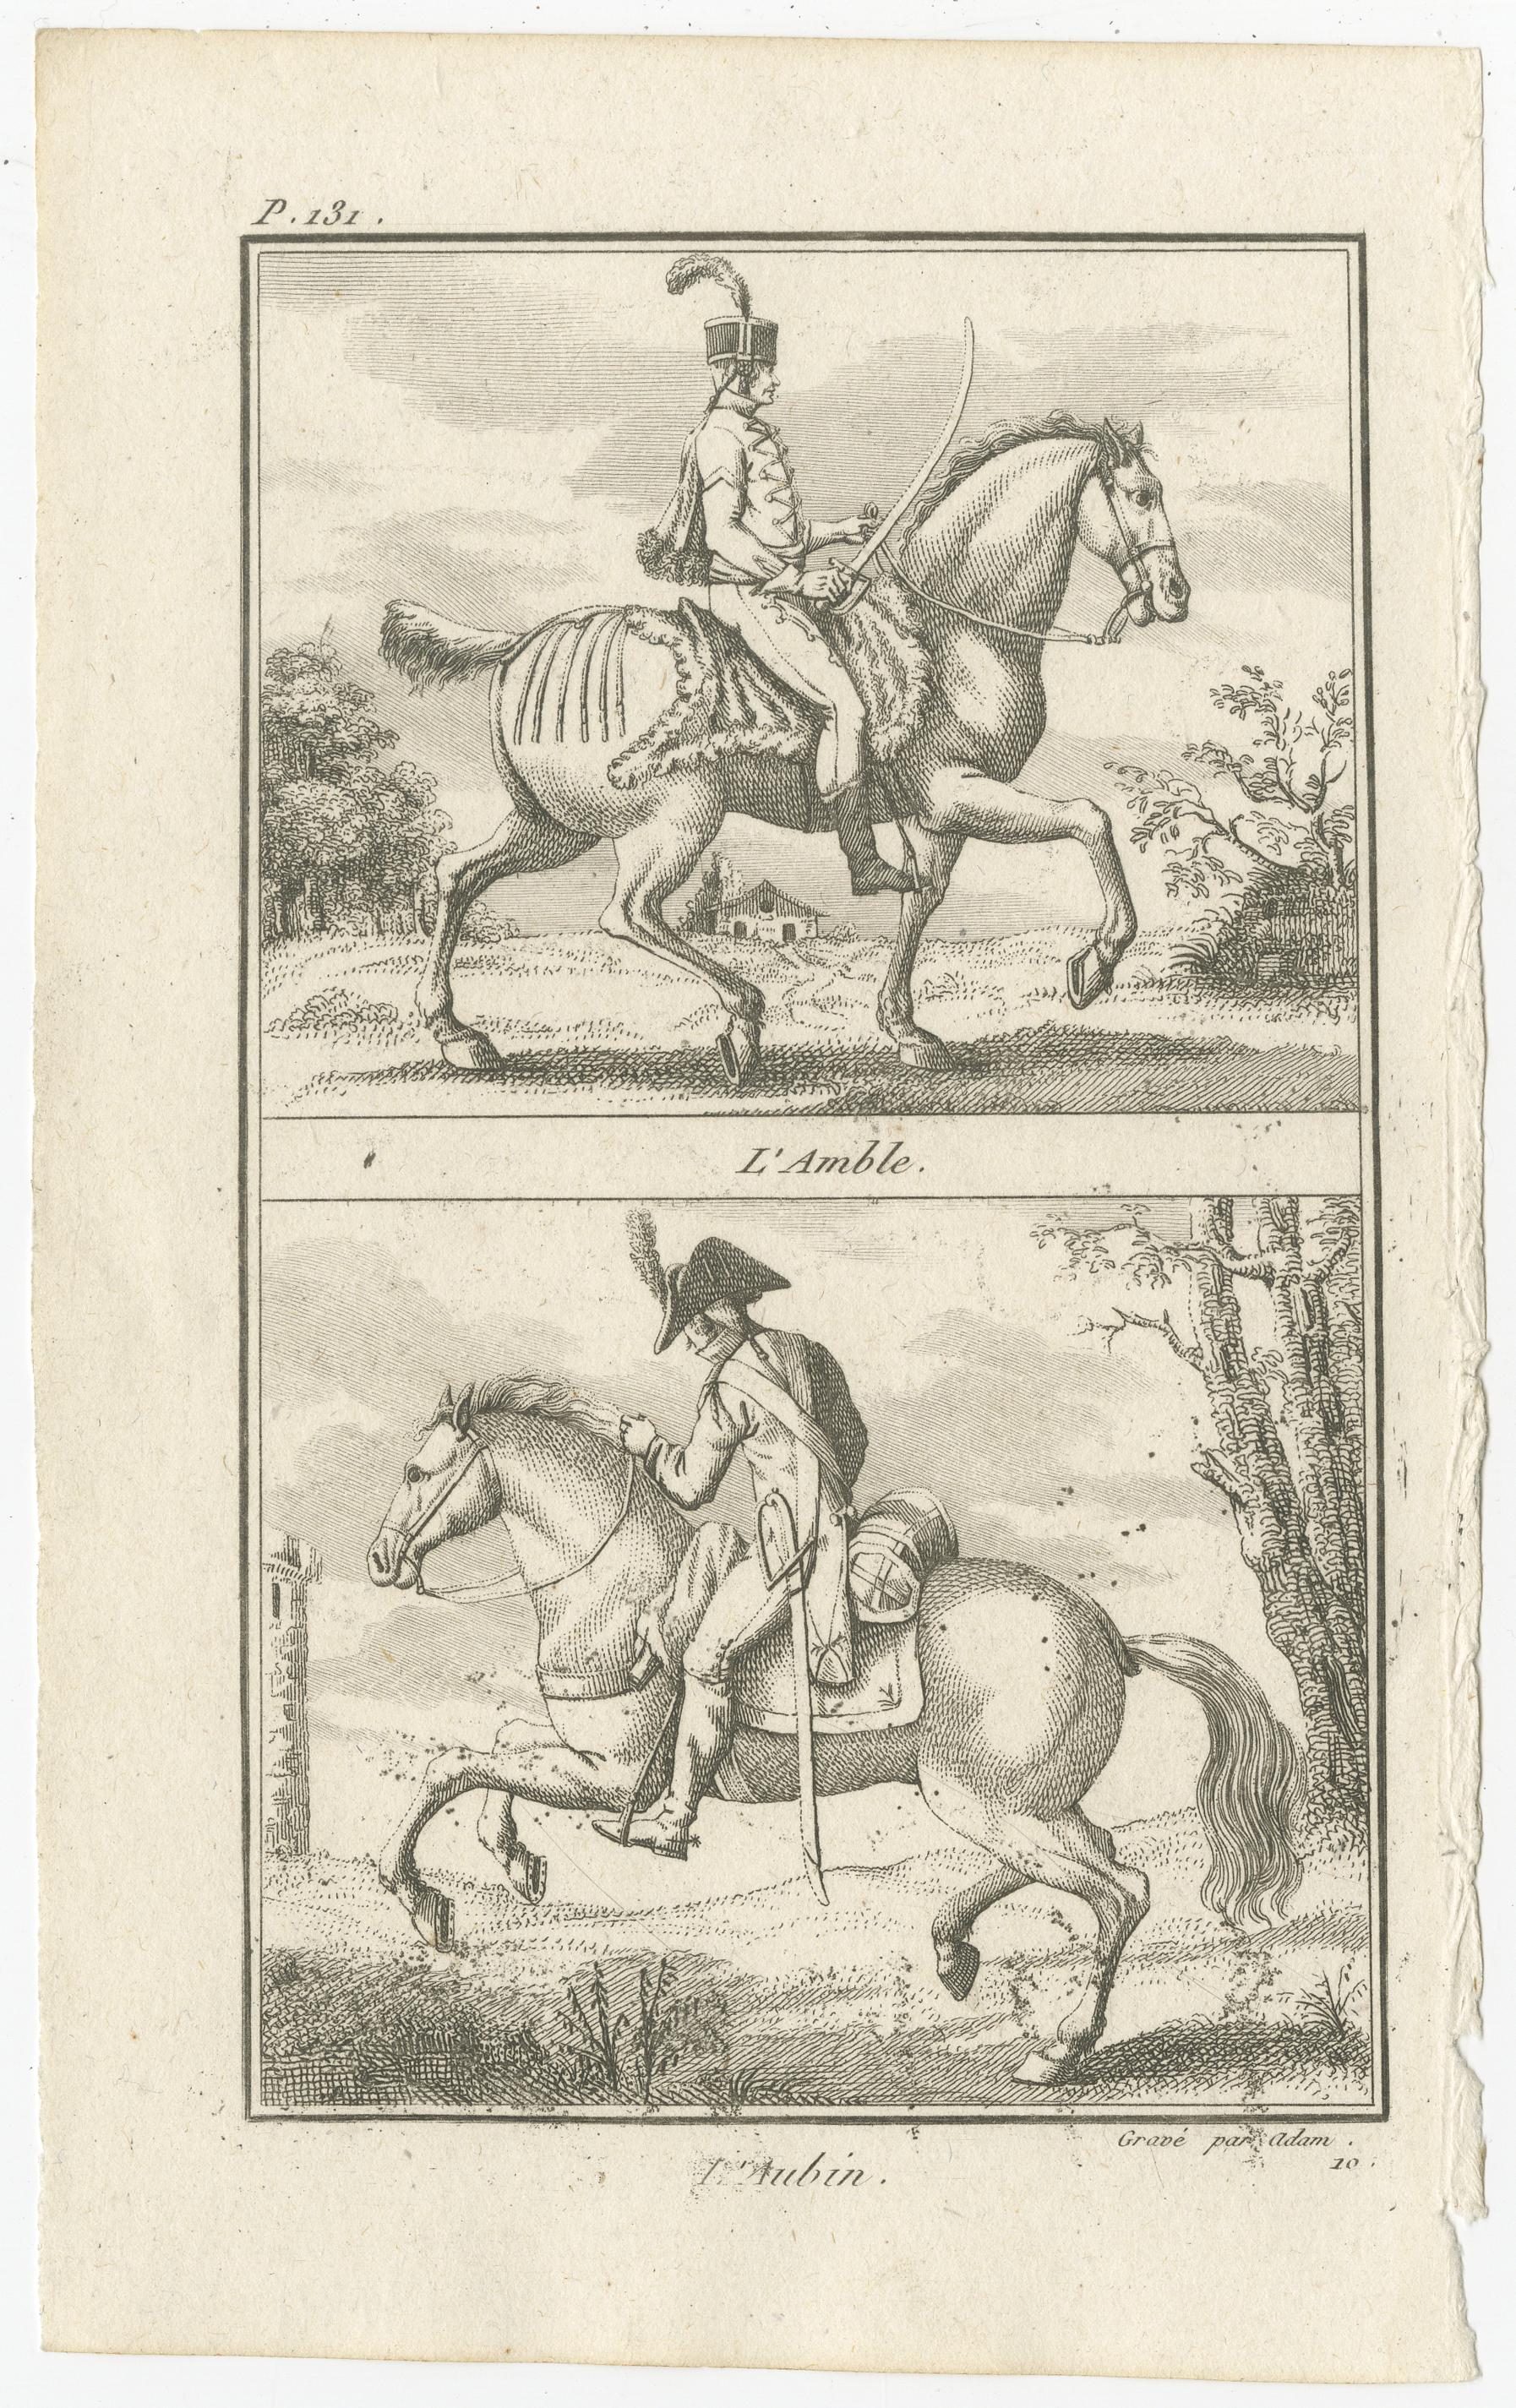 Antiker Druck mit dem Titel 'L'Amble - l'Aubin'. Zwei Bilder auf einem Blatt, jeweils mit einem Reiter auf einem Pferd, der die jeweilige Reitfigur ausführt. Dieser Druck stammt aus 